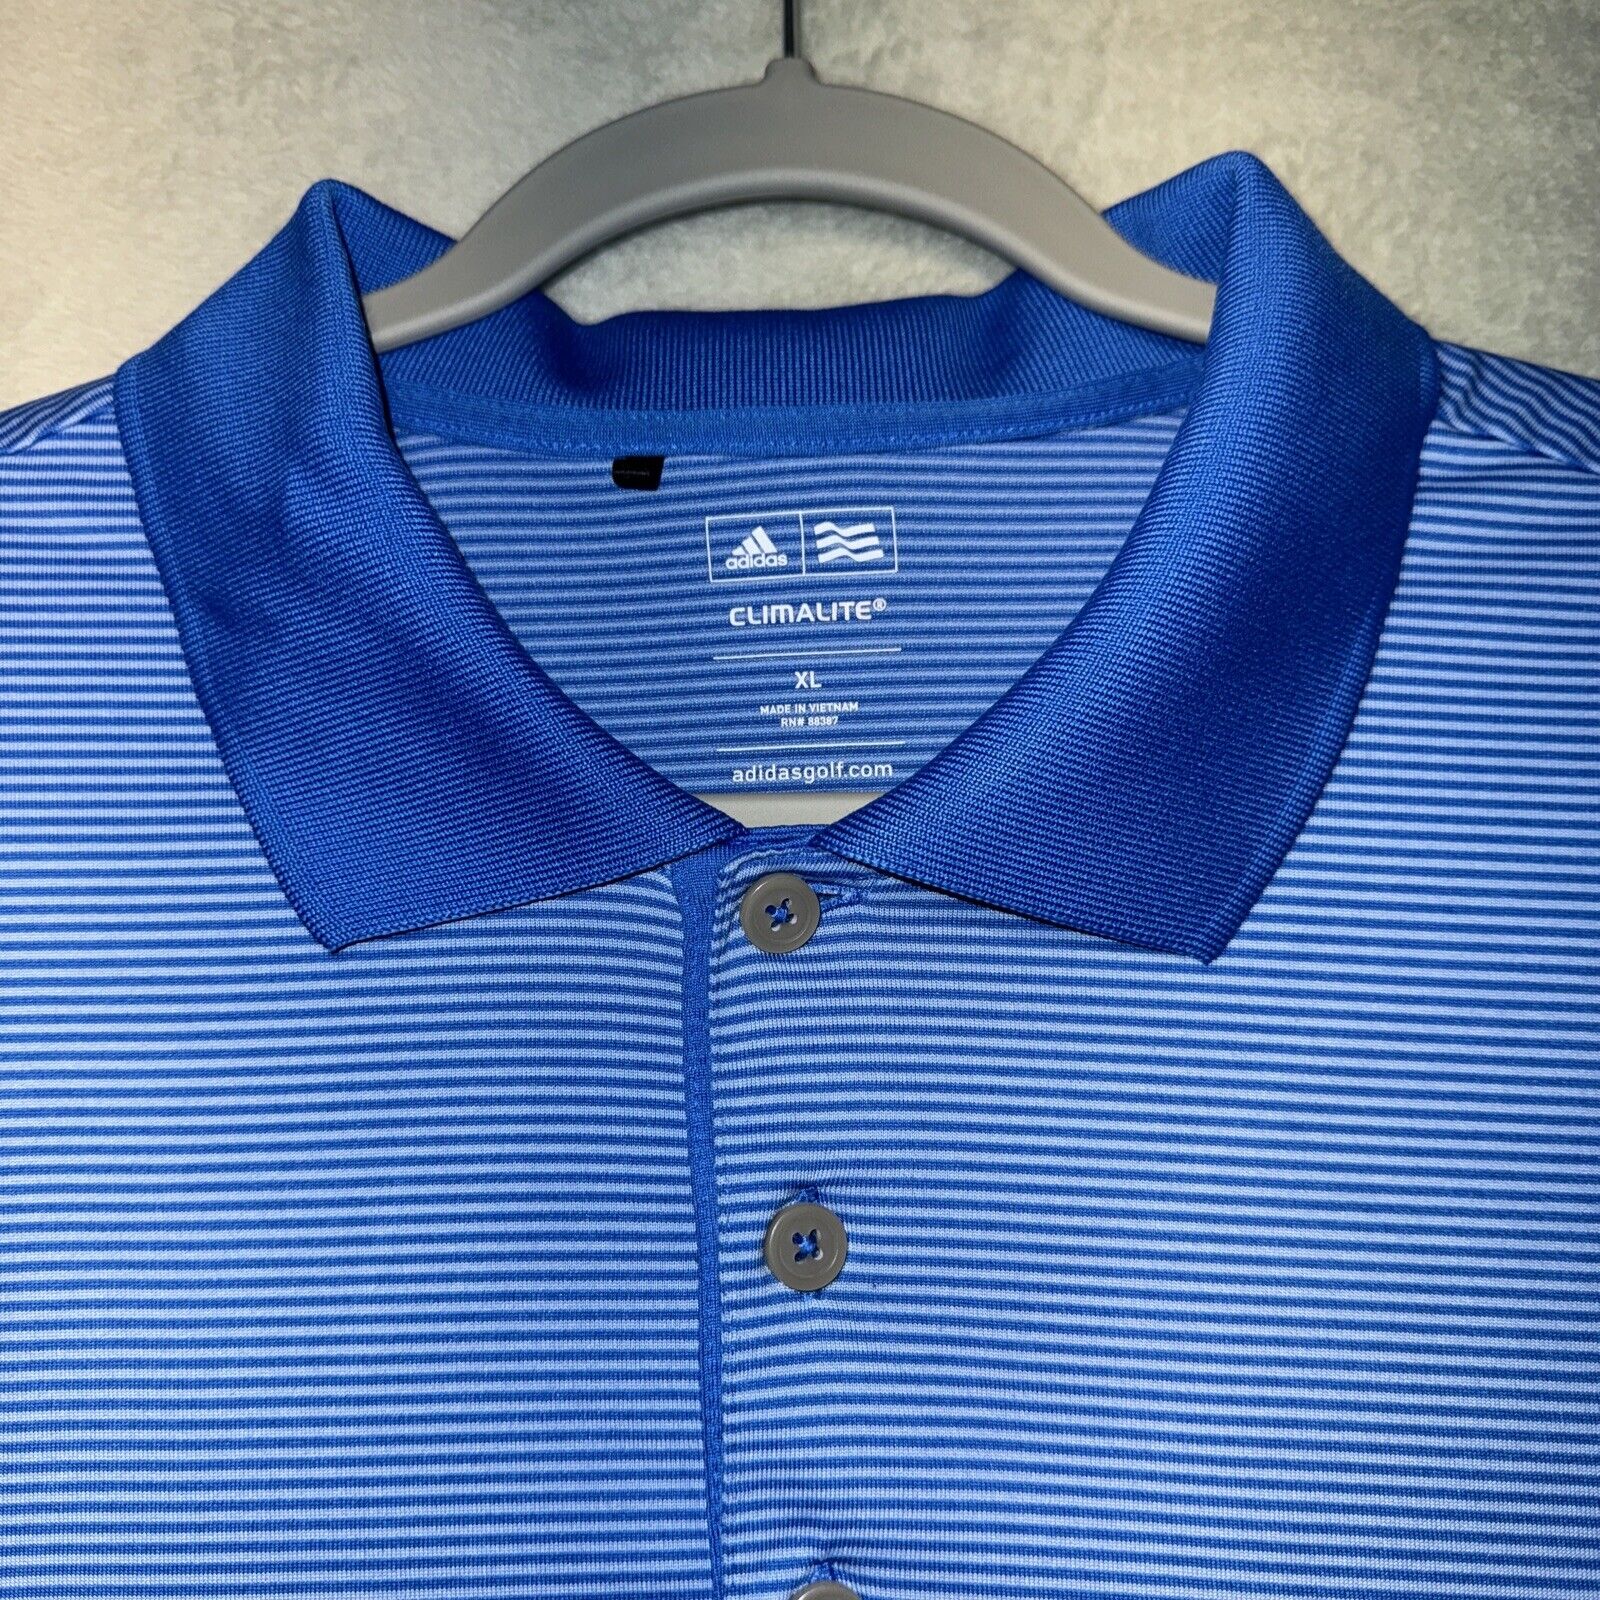 Men’s Adidas Golf Shirt Size XL